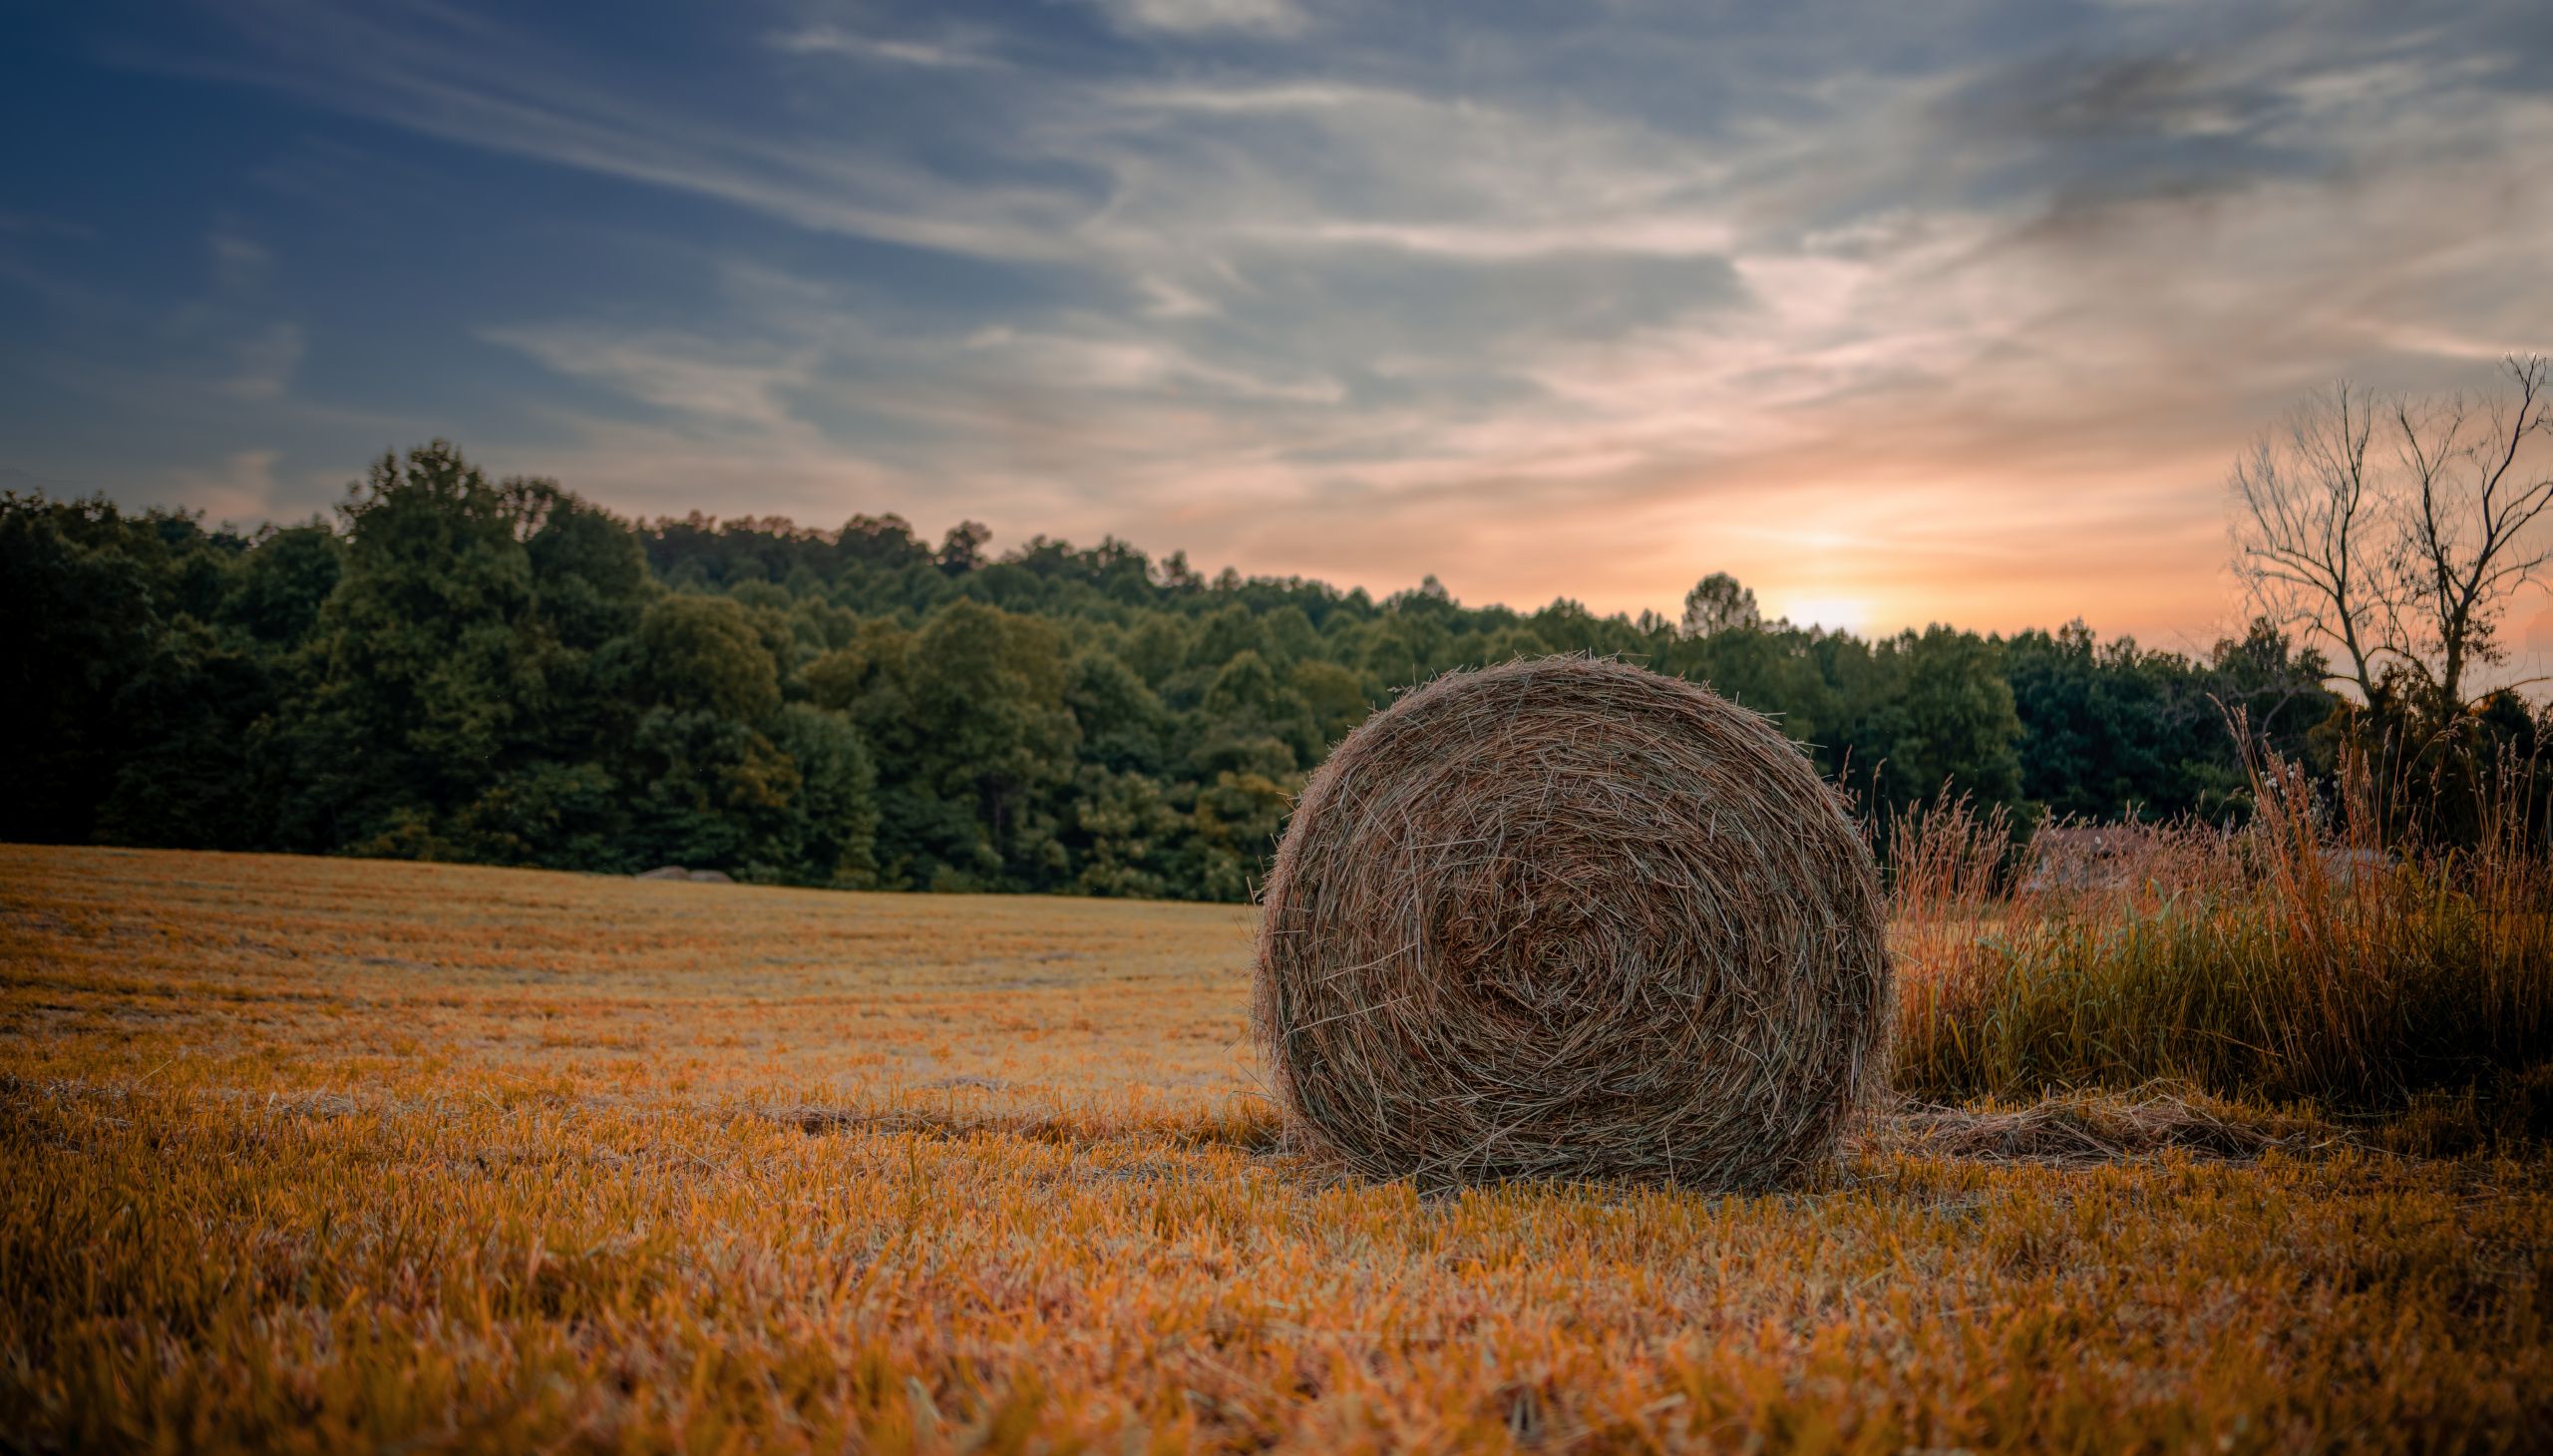 Hay bale on empty cropped field